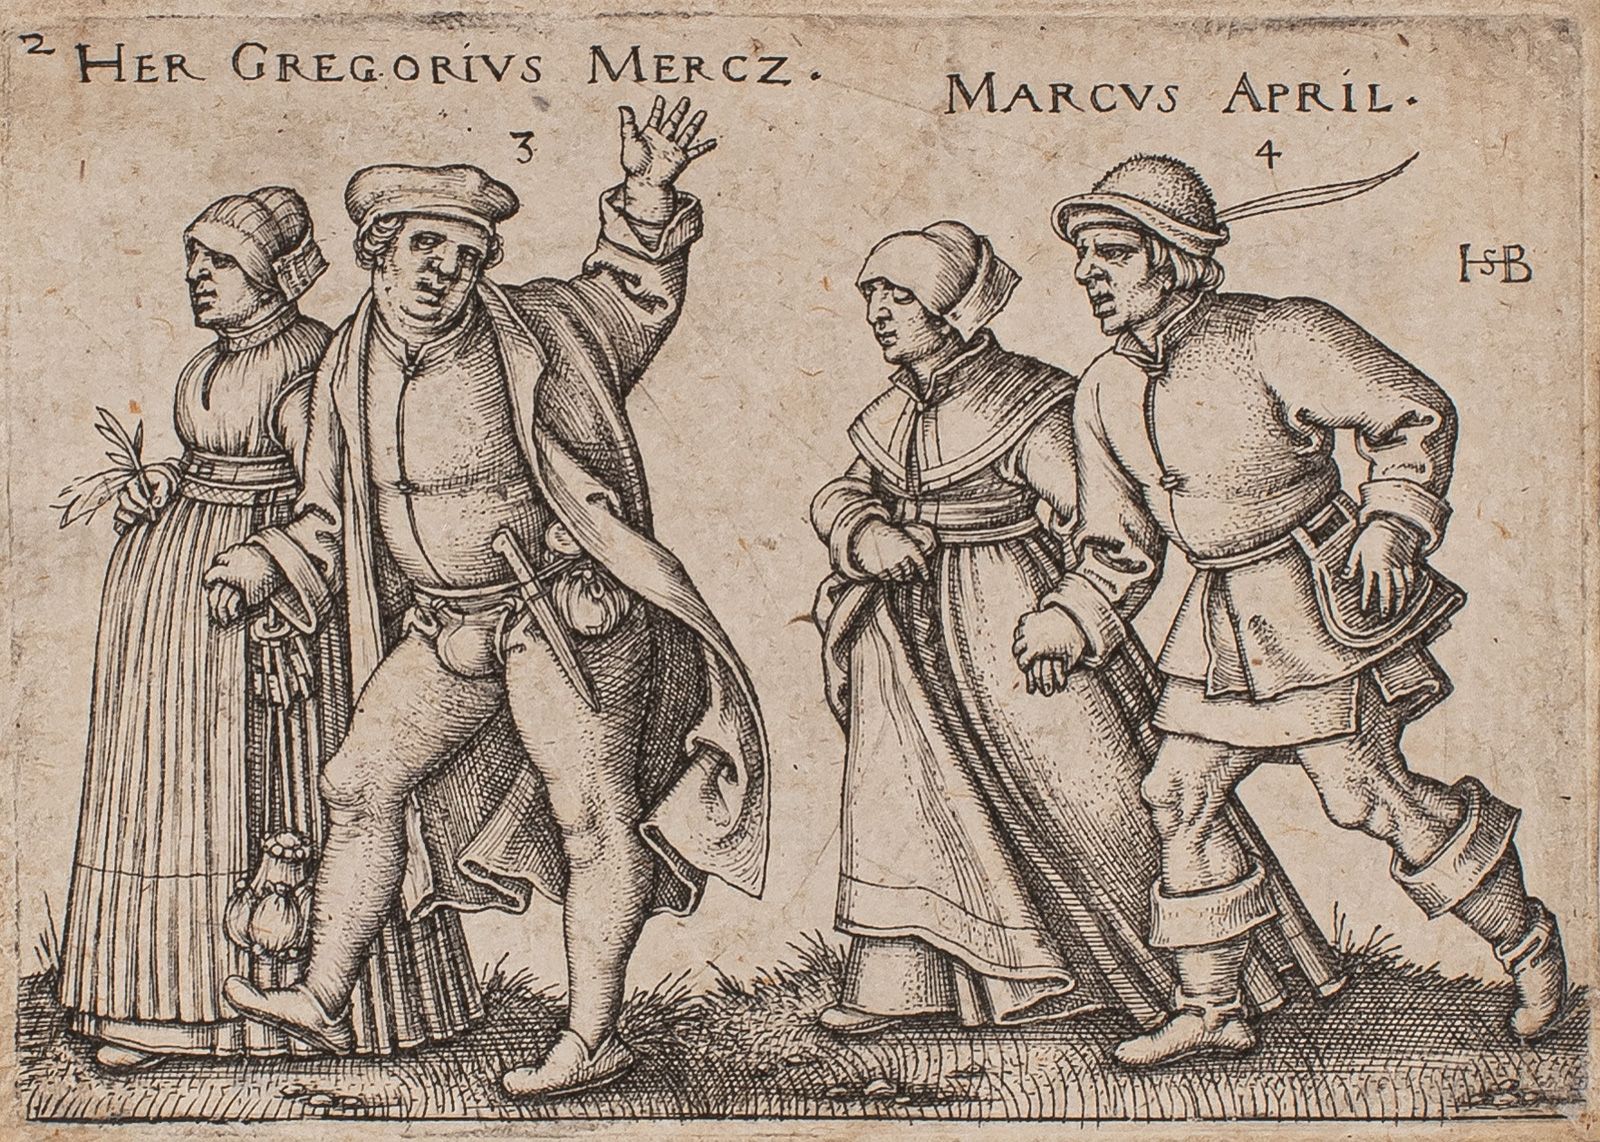 Null 汉斯-塞巴尔德-贝汉姆（1500-1550）《格雷戈里乌斯-默茨》（Her Gregorius Mercz）--马库斯-艾普尔。(10个乡村婚礼或年月&hellip;